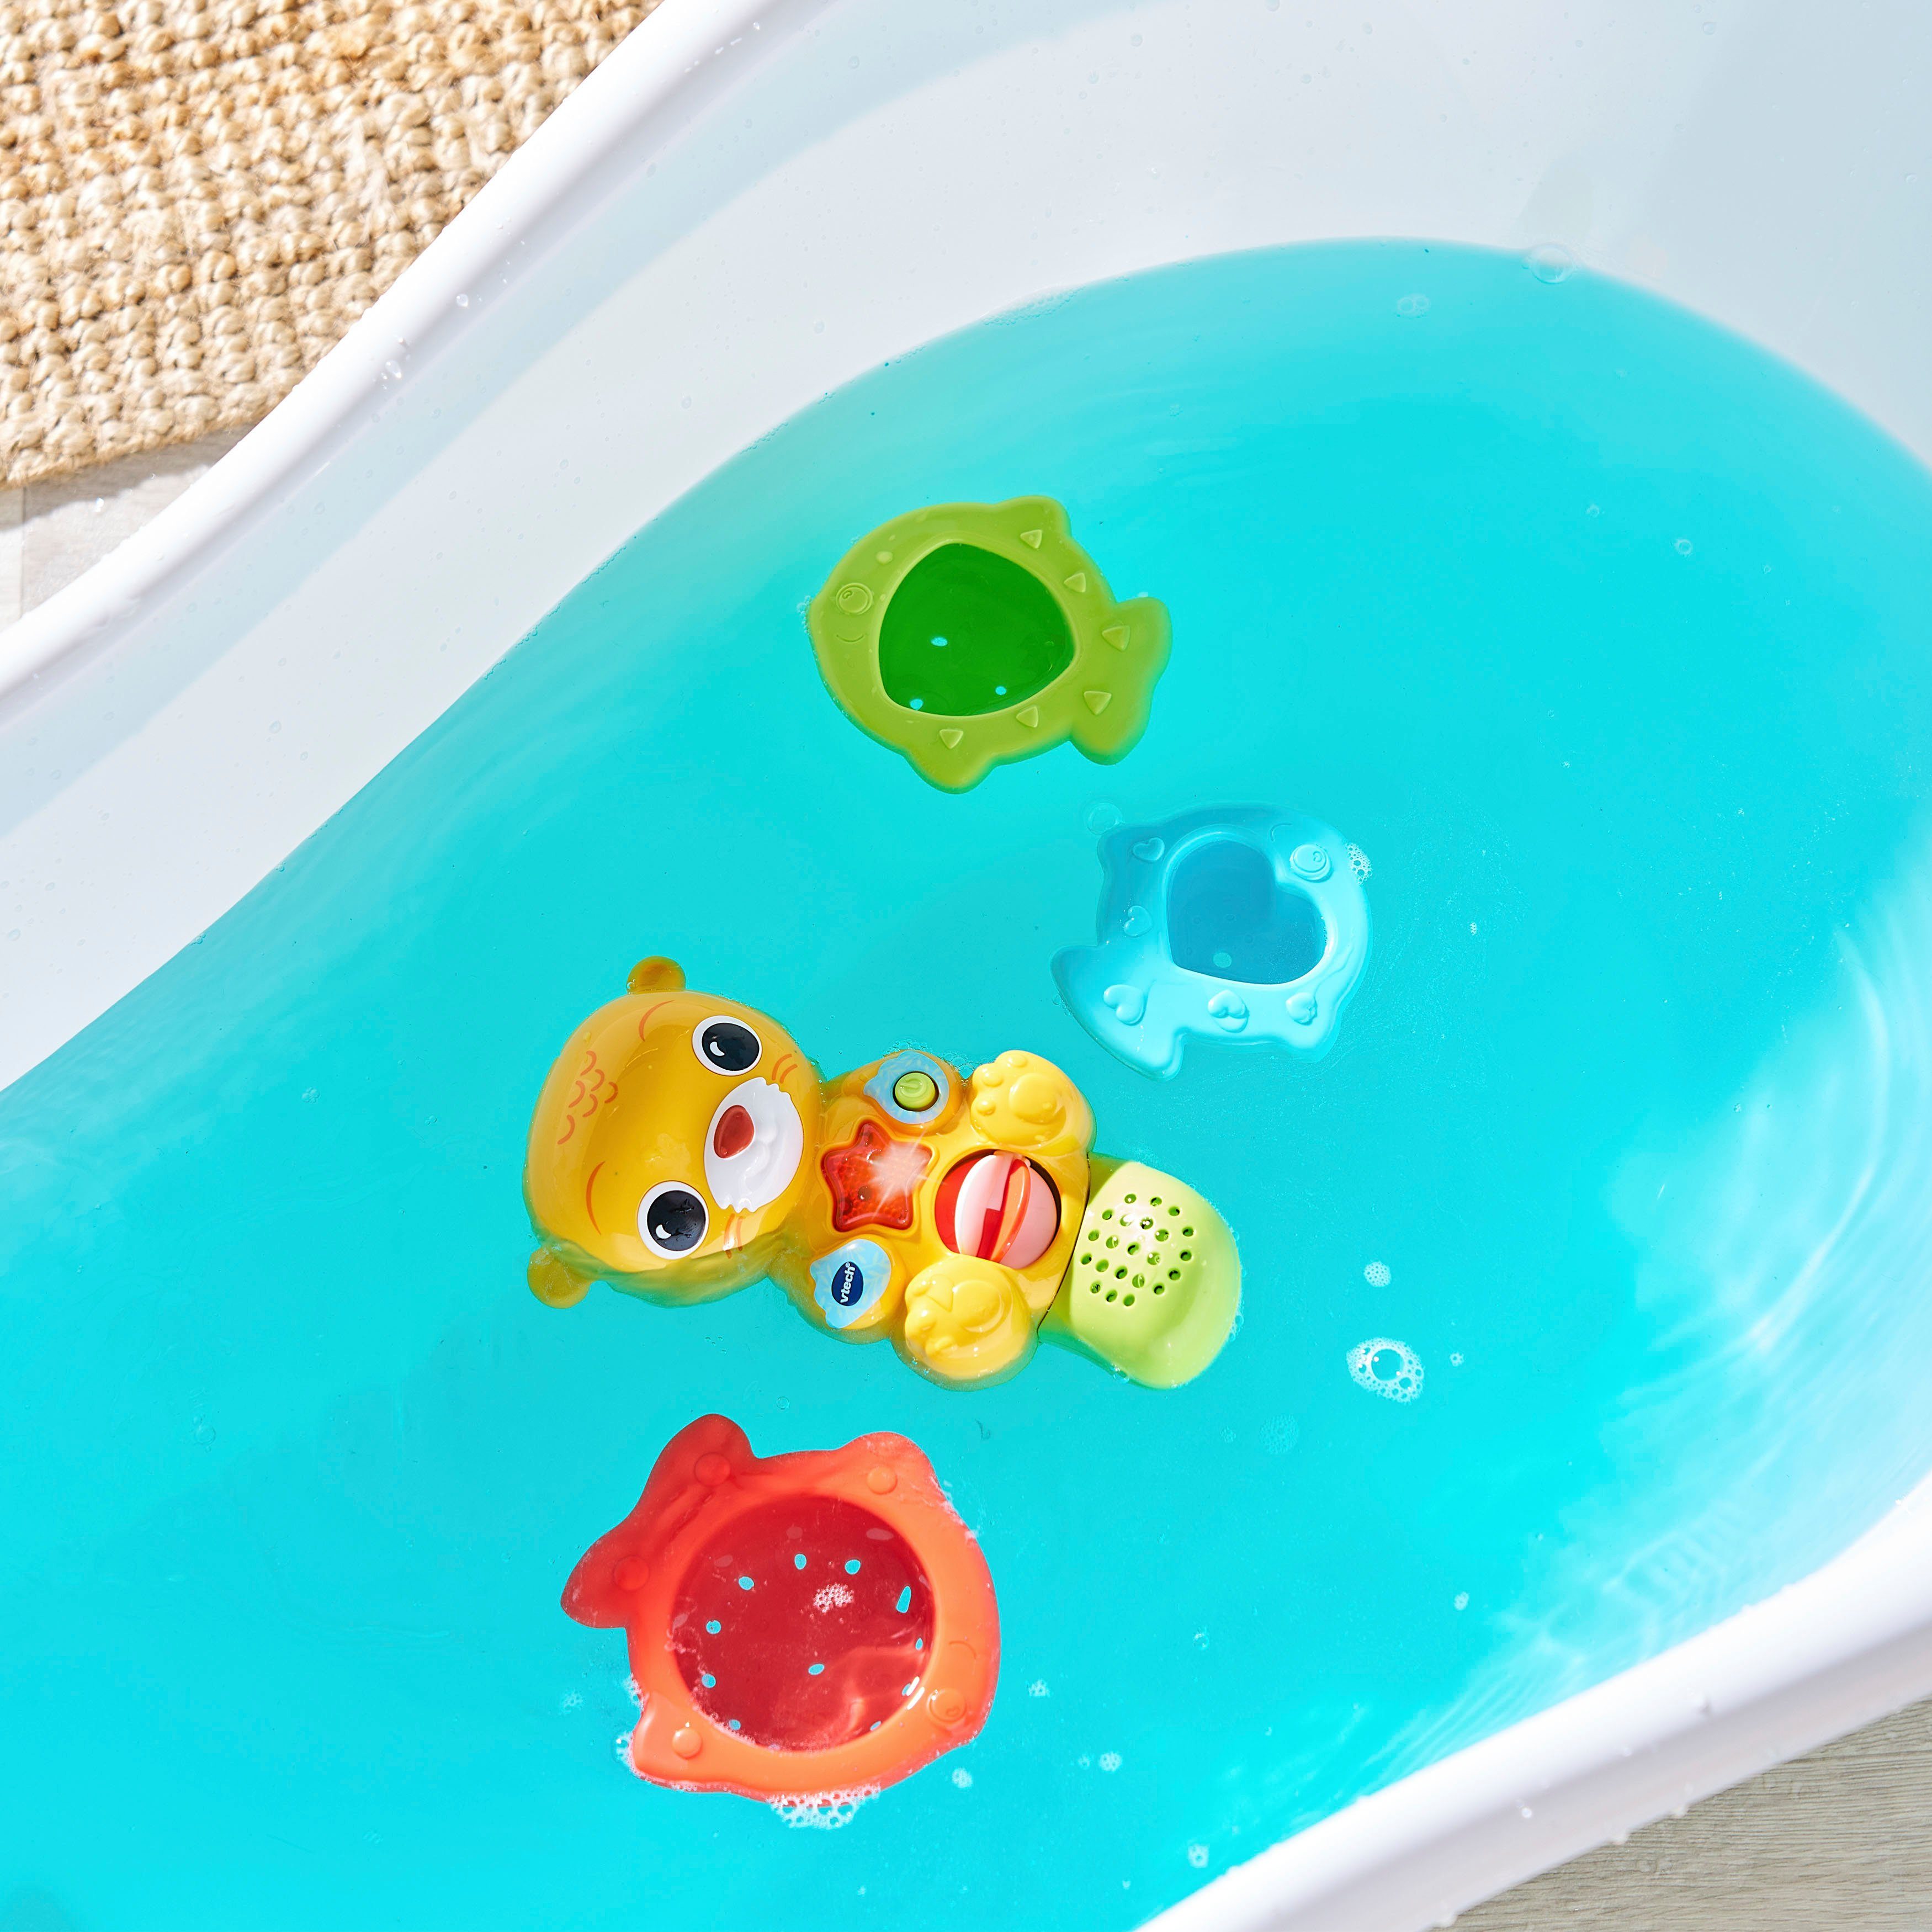 Vtech® Baby, Vtech Licht Badespielzeug Badespaß Otter, mit Sound und